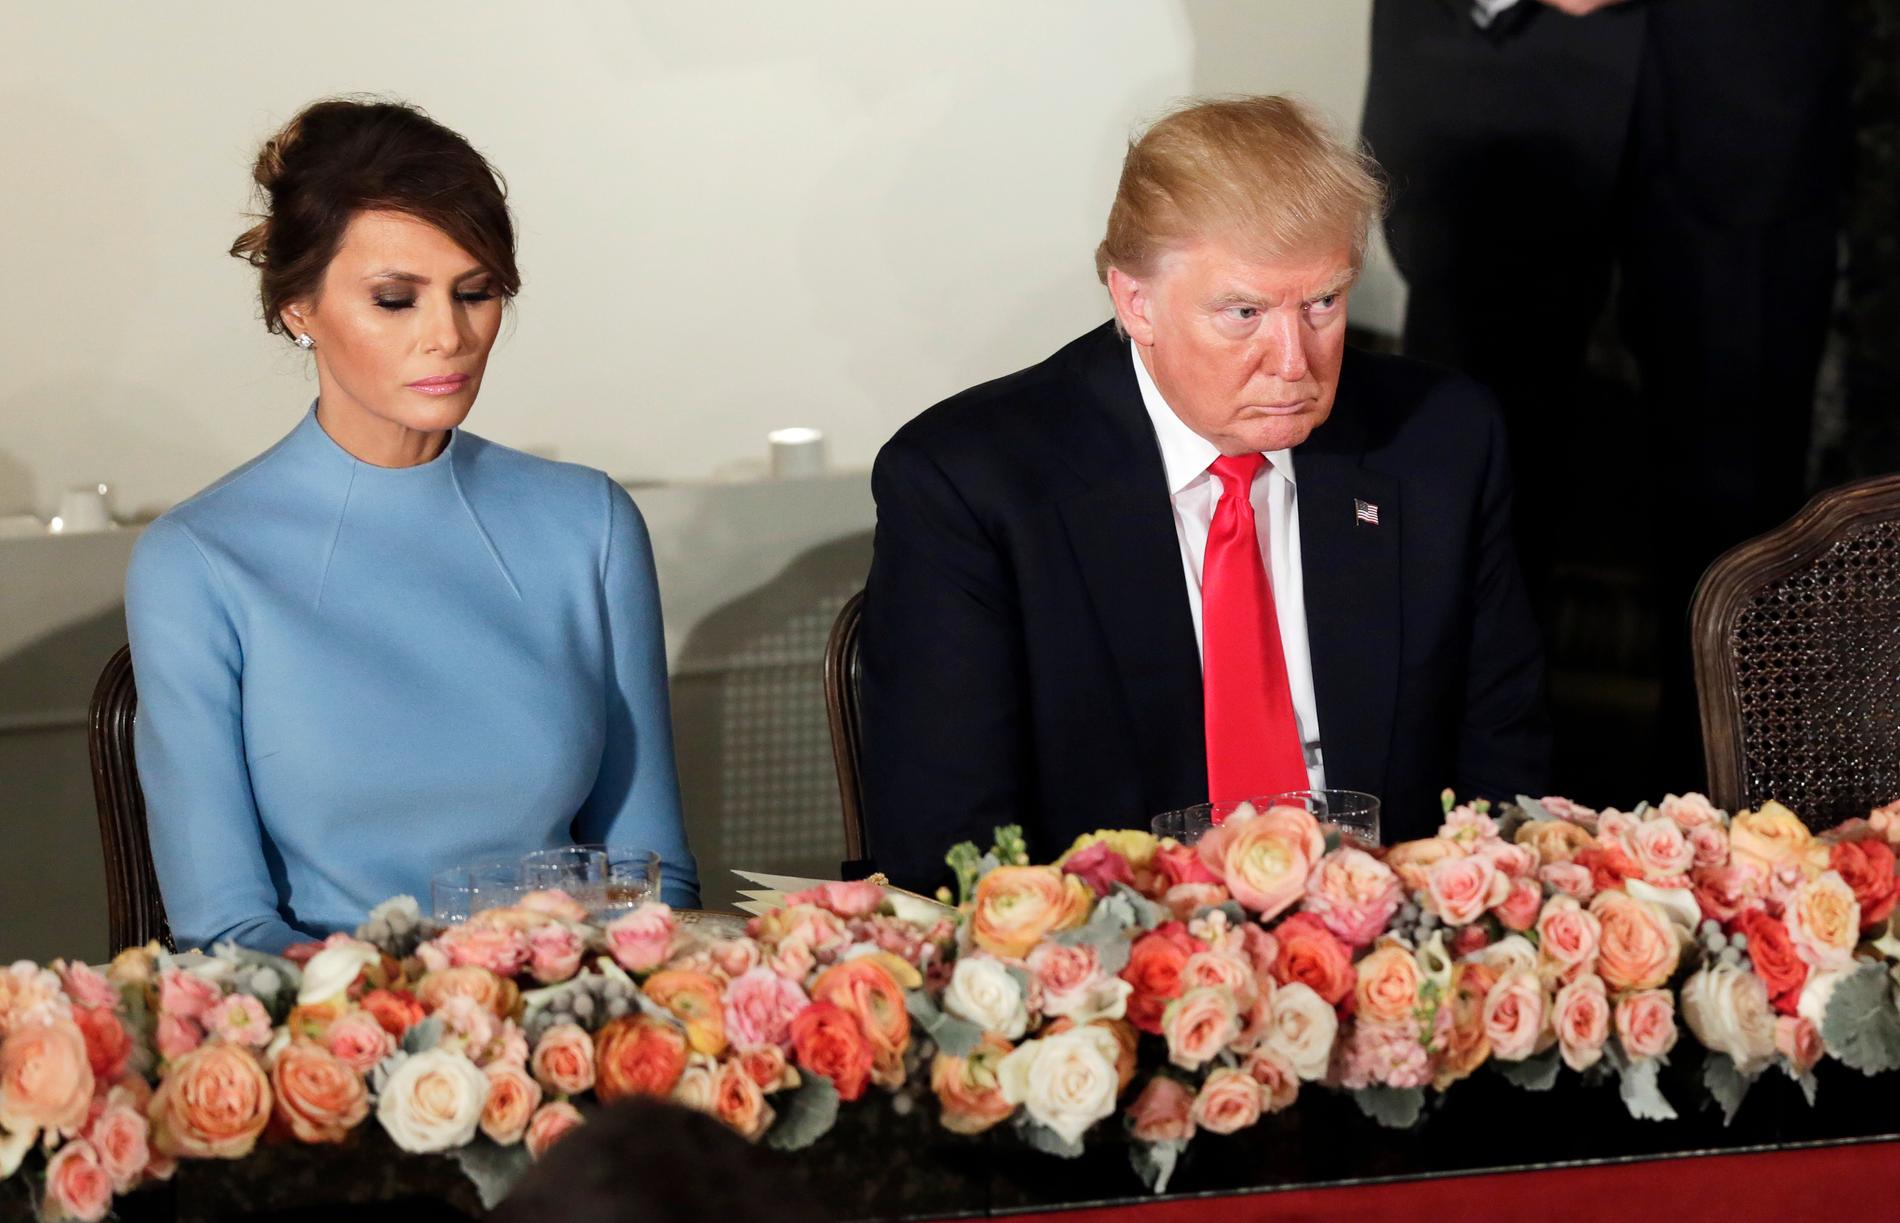 Melania och Donald Trump på installationslunchen. Han har just raderat all information om klimatet.